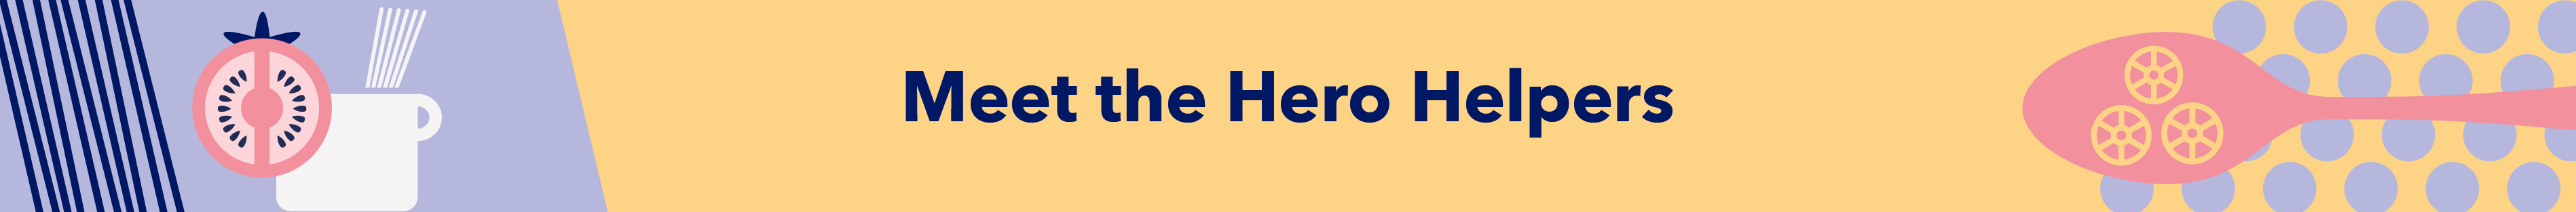 Meet the Hero Helpers